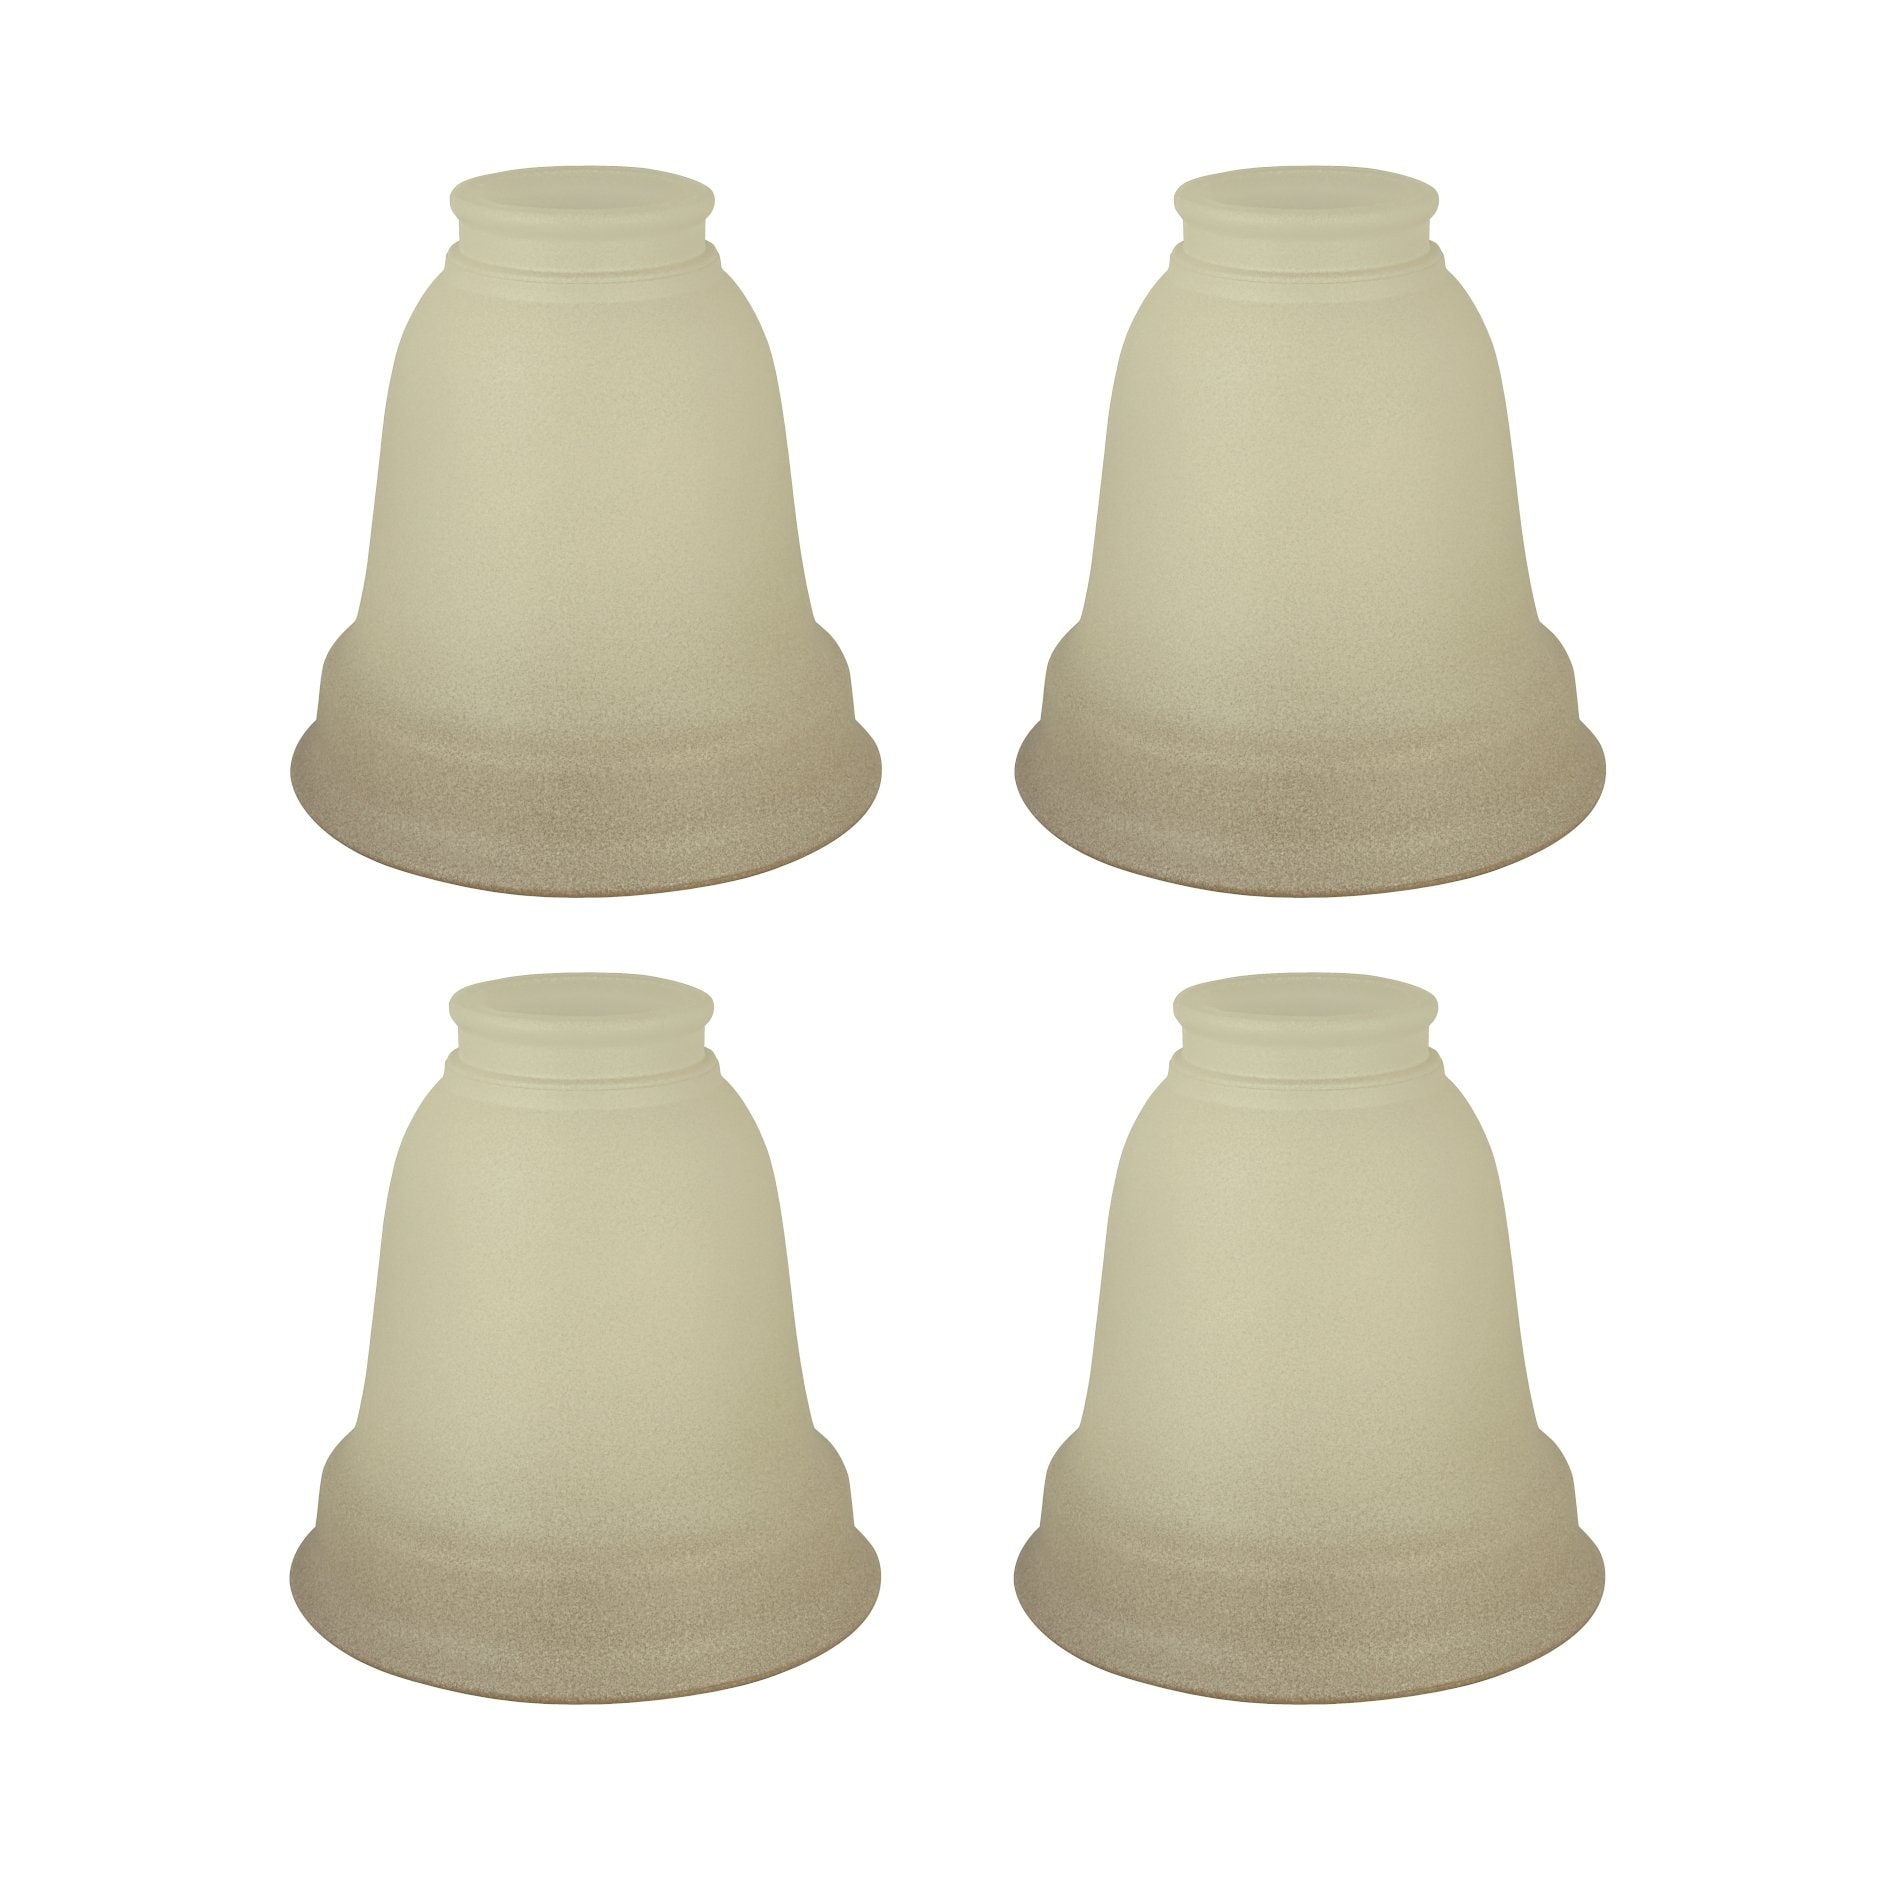 per each ANTIQUE BRASS 2 1/4" Bell Glass Lamp Shade Holder 